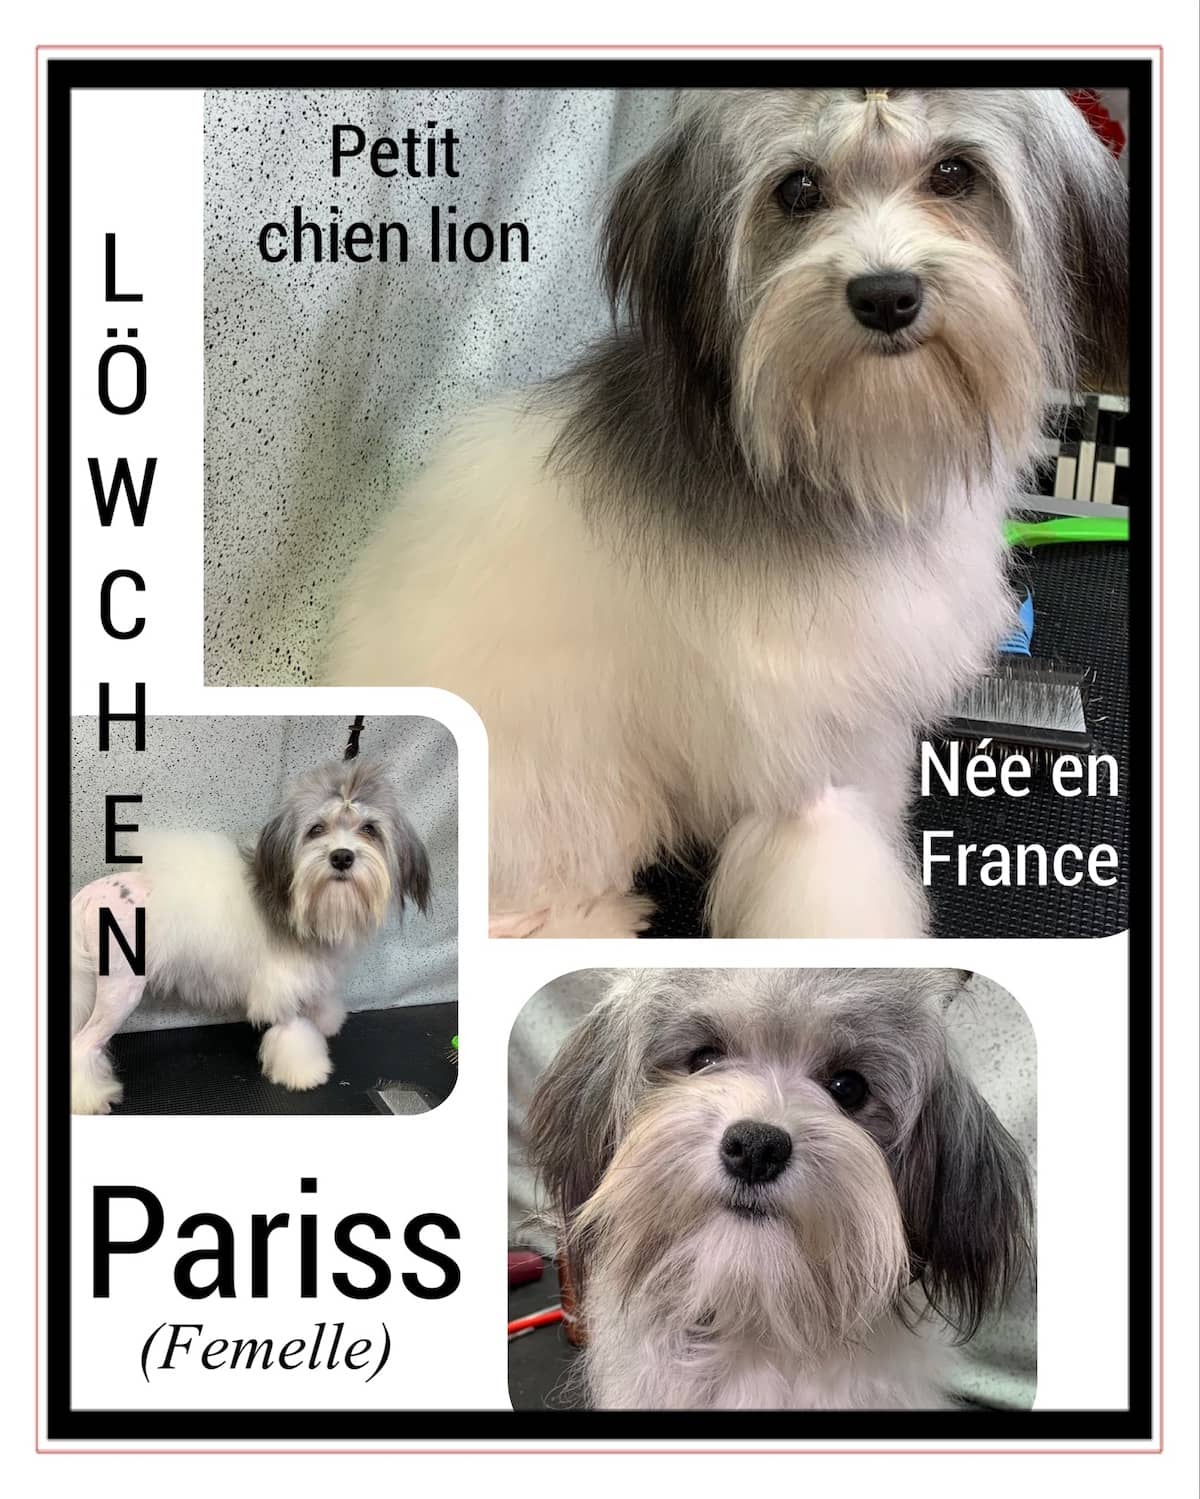 Löwchen : Nos chiens reproducteurs | Élevage Royal Valmy